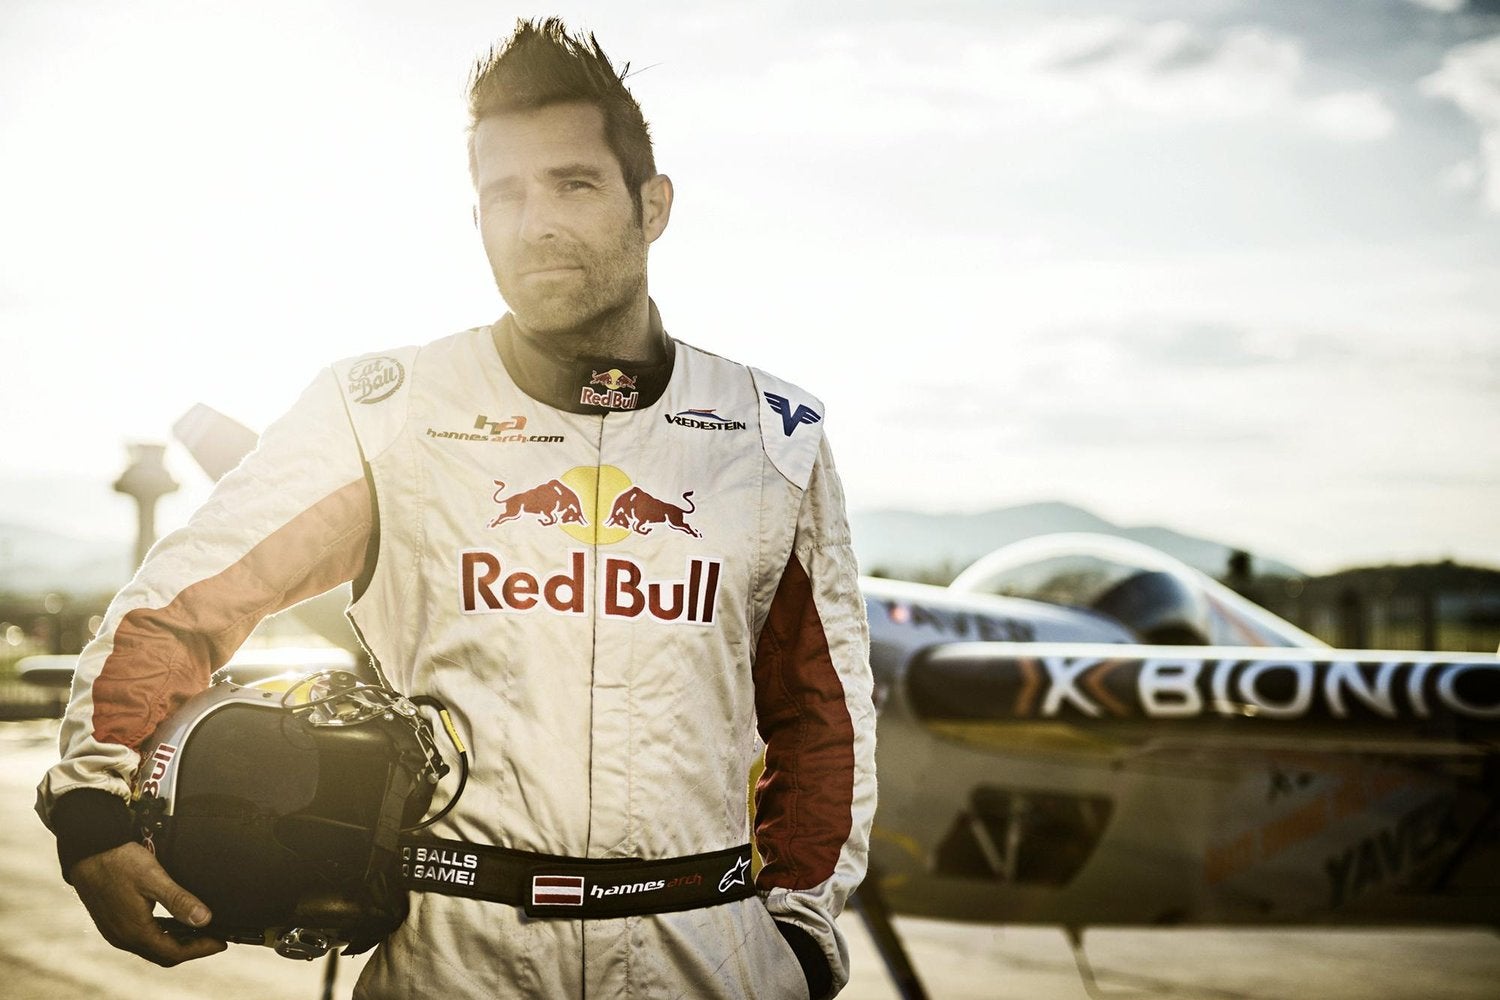 Red Bull Air Race Pilot Hannes Arch Dies